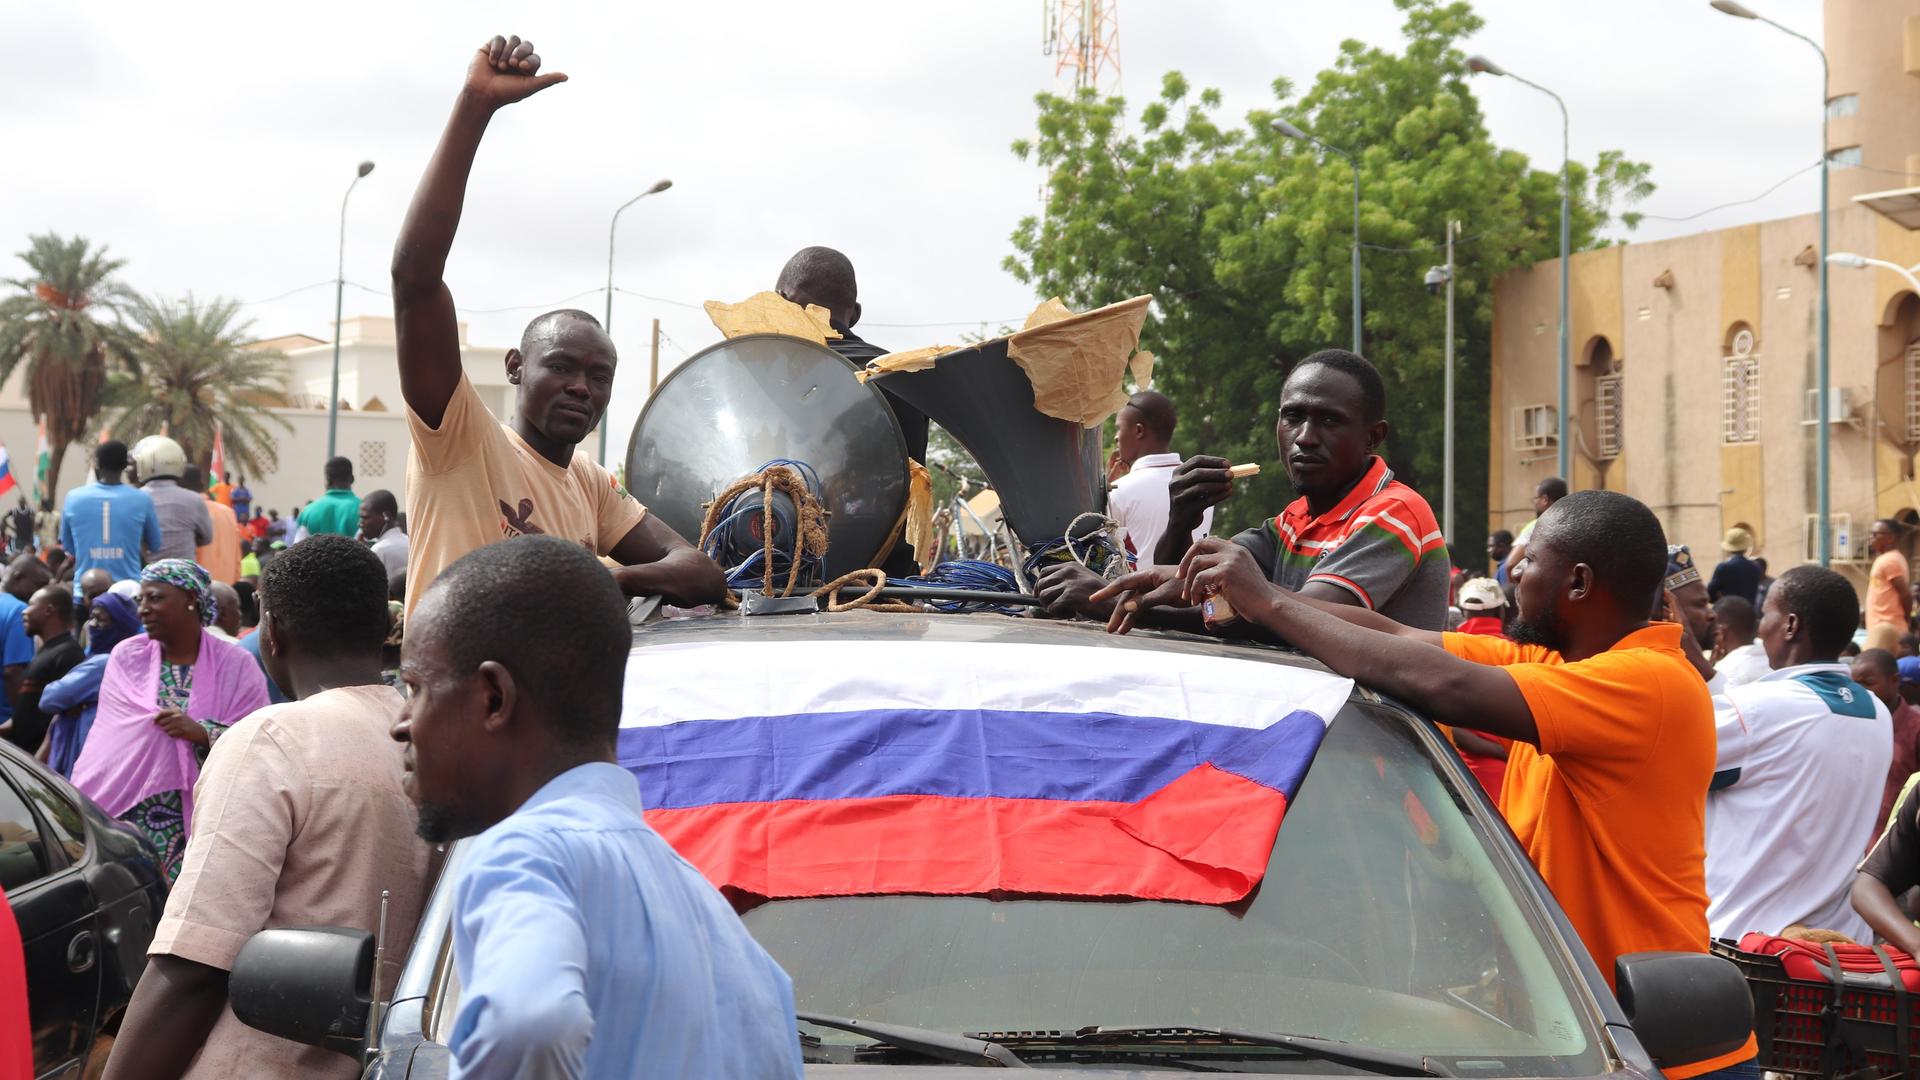 Das Foto zeigt schwarze Menschen, die in Nigers Hauptstadt Niamey demonstrieren. Auf der Windschutzscheibe eines Autos liegt eine russische Fahne in den Farben Weiß, Blau und Rot.